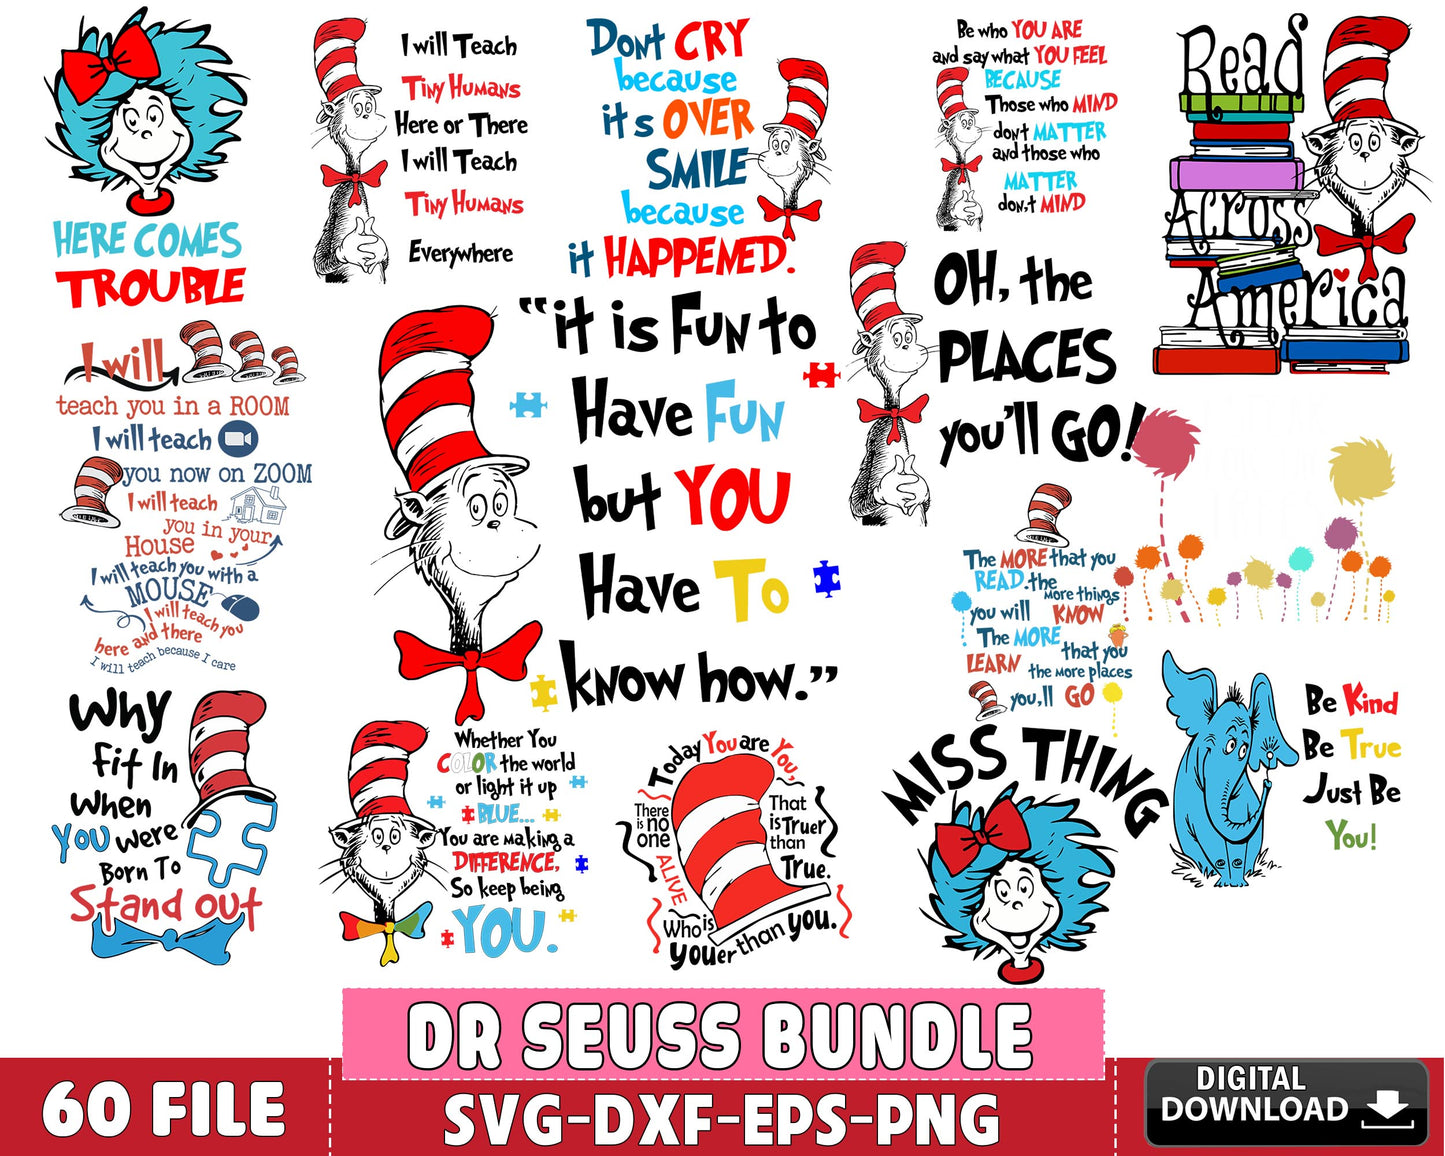 Dr Seuss Bundle svg, 60+ files Dr Seuss svg dxf eps png, for Cricut, Silhouette, digital, file cut